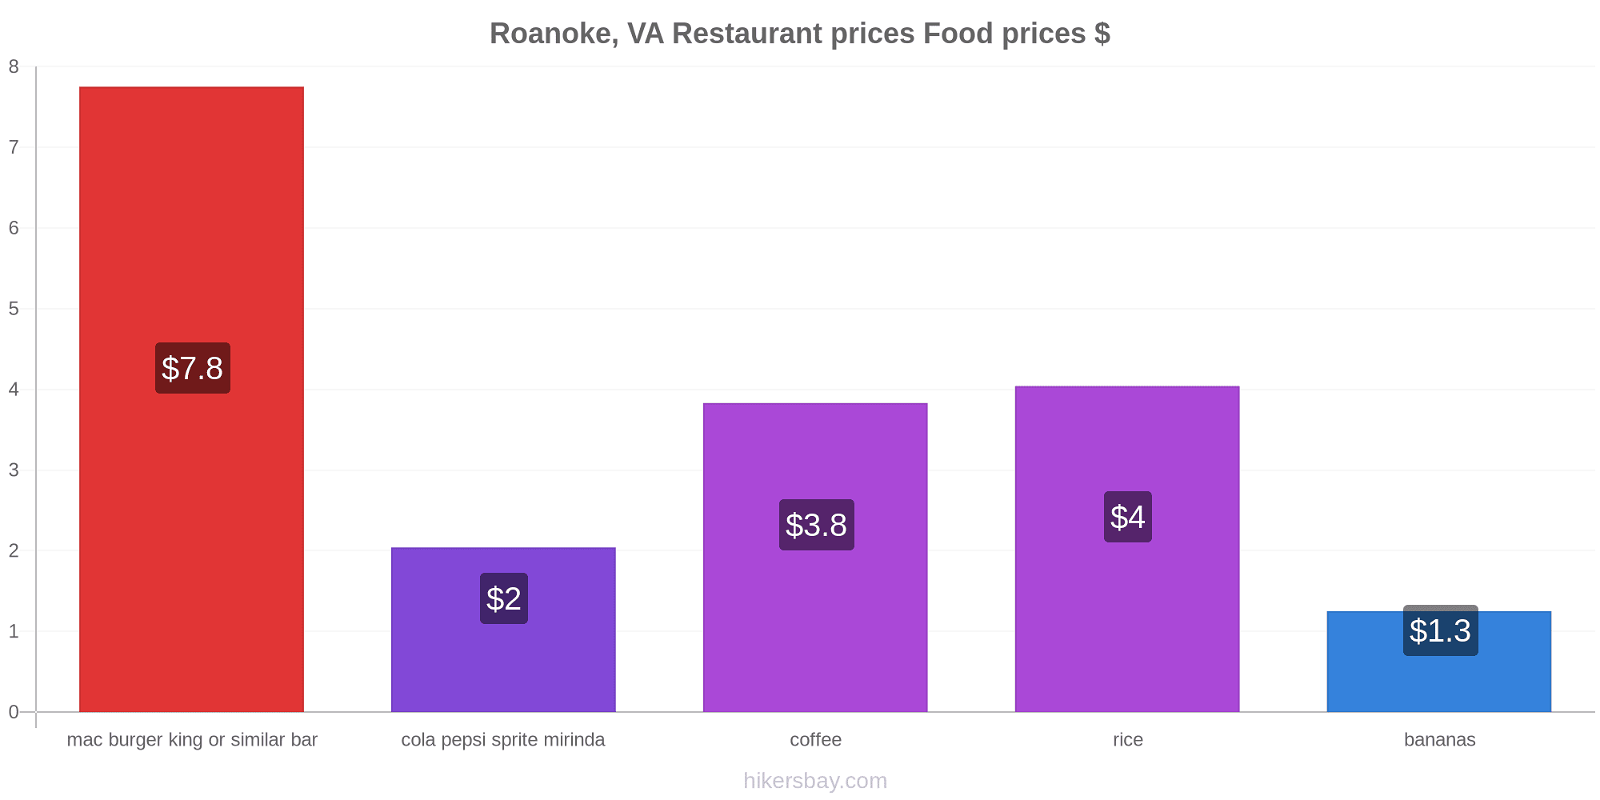 Roanoke, VA price changes hikersbay.com